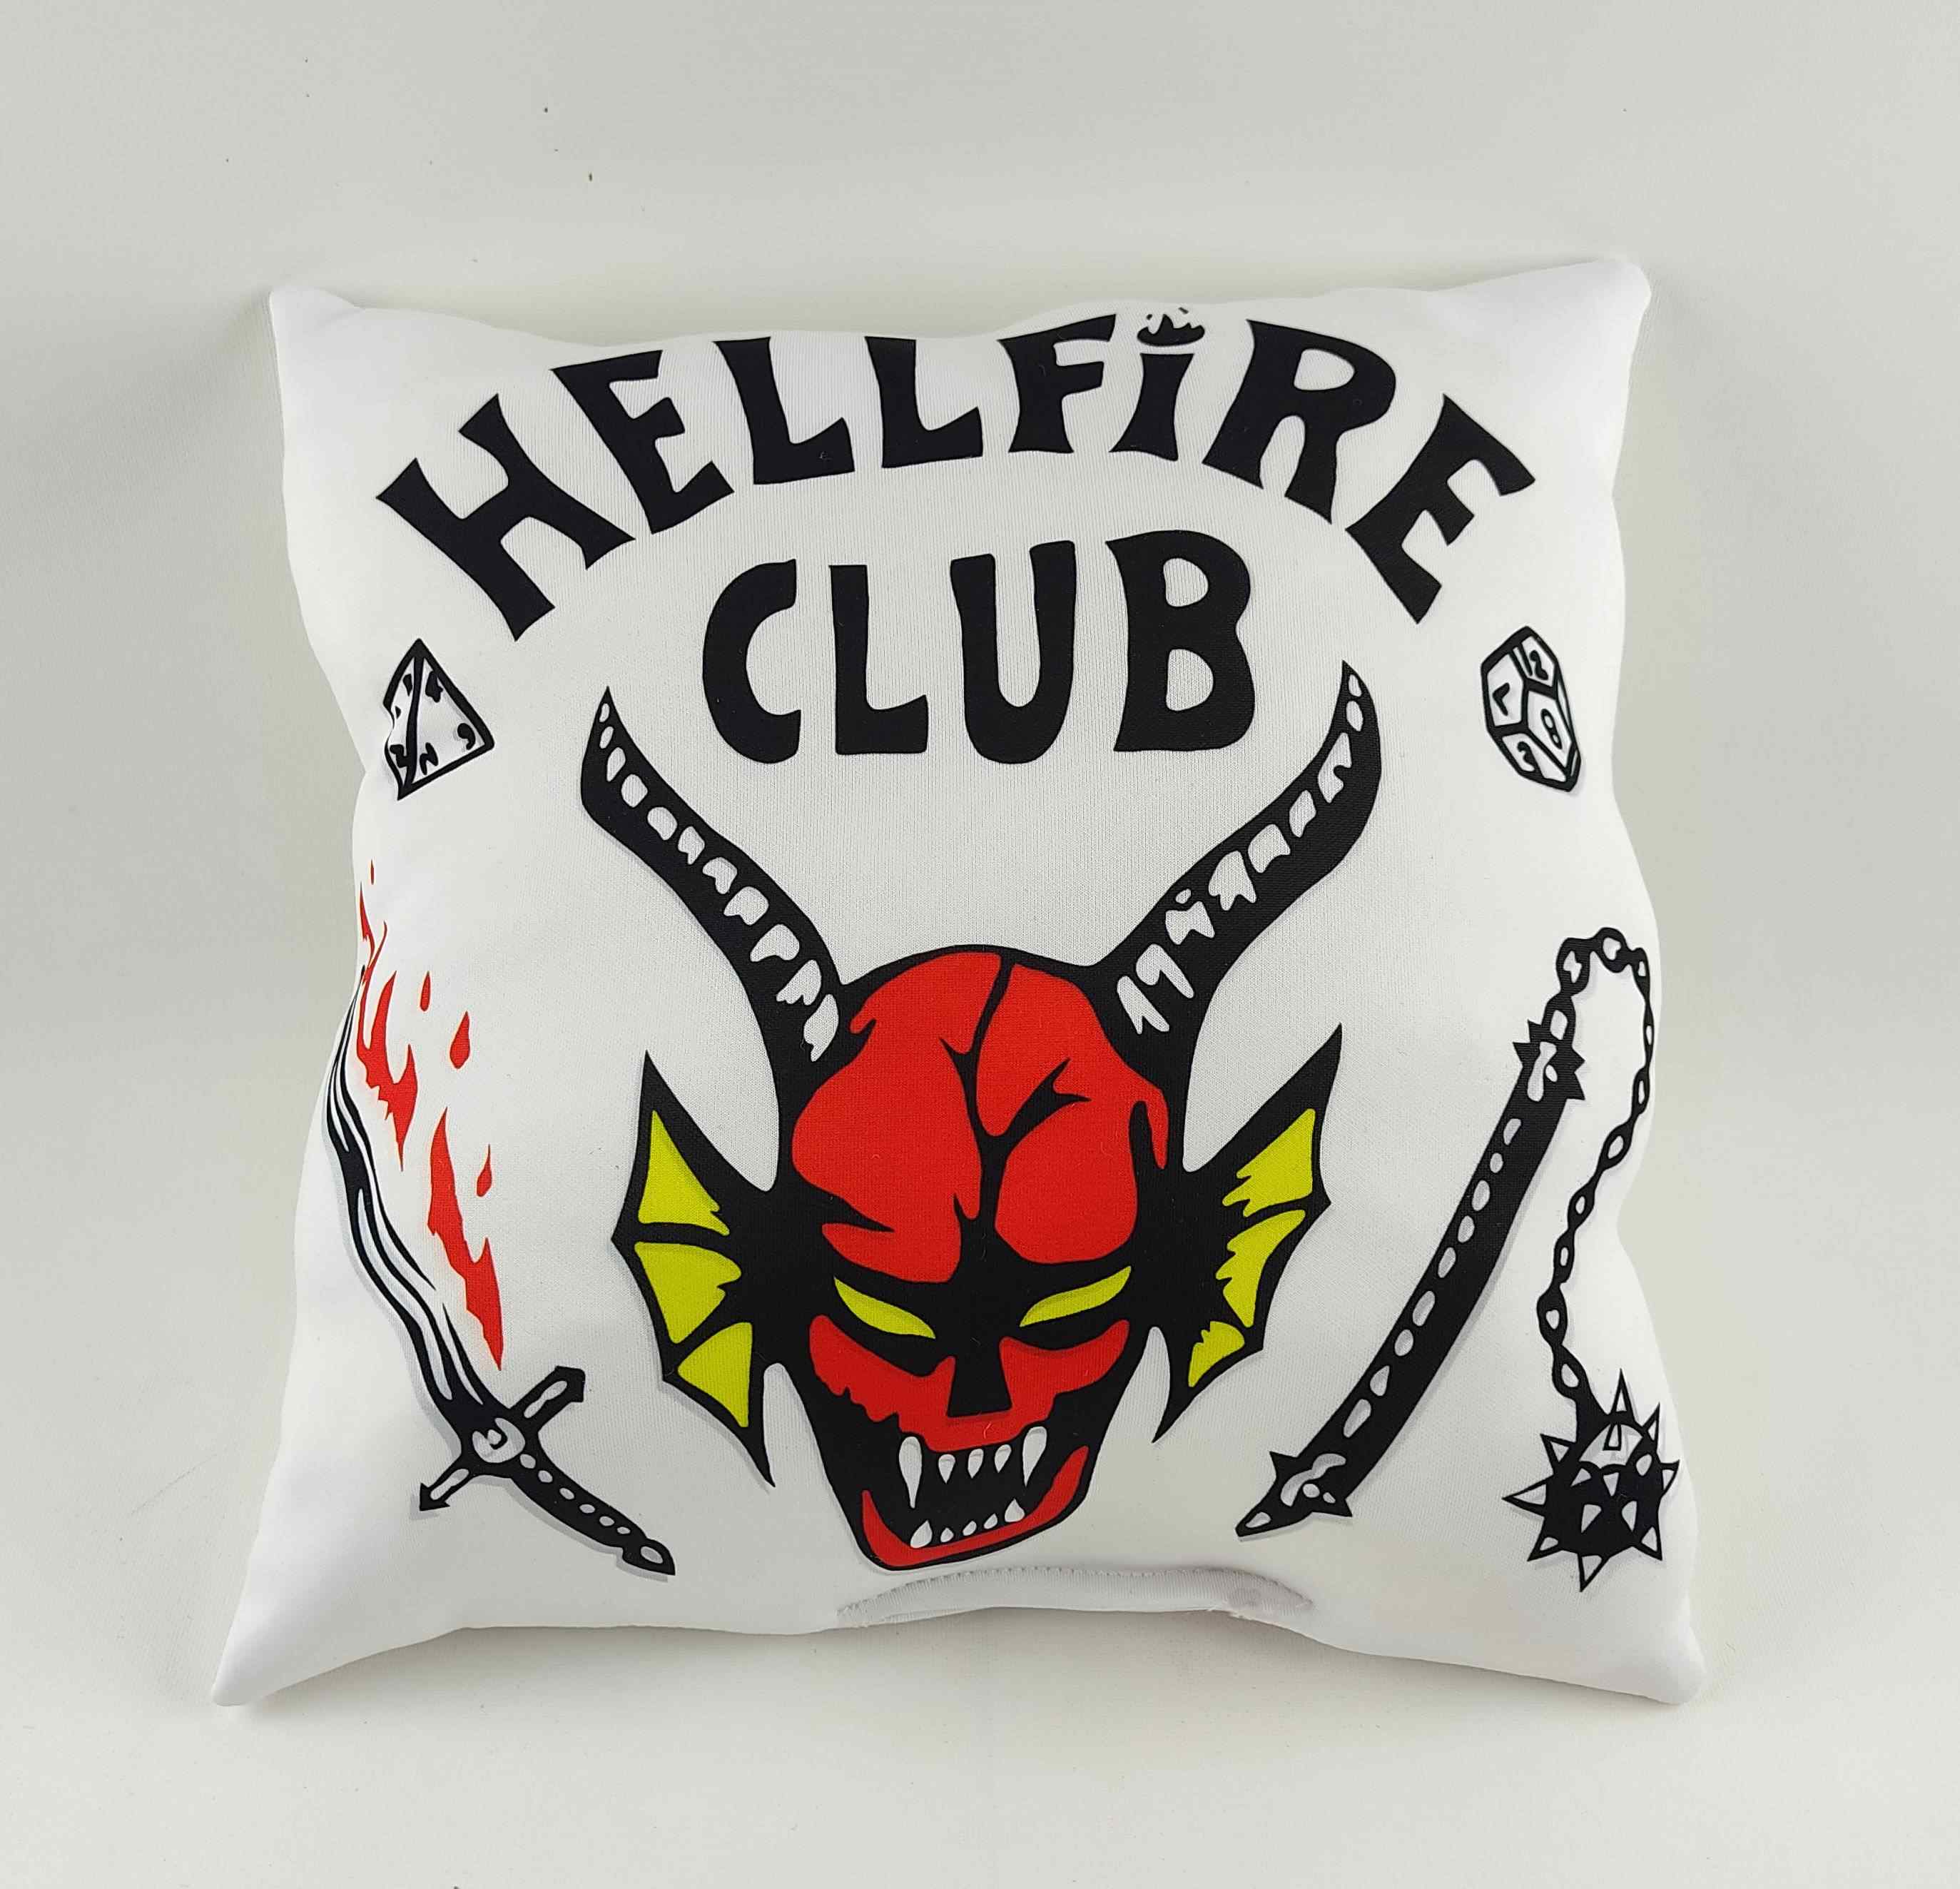 Stranger Things HellFire Club Tasarımlı Kutulu Kupa , Yastık Ve Defter Hediyelik Set